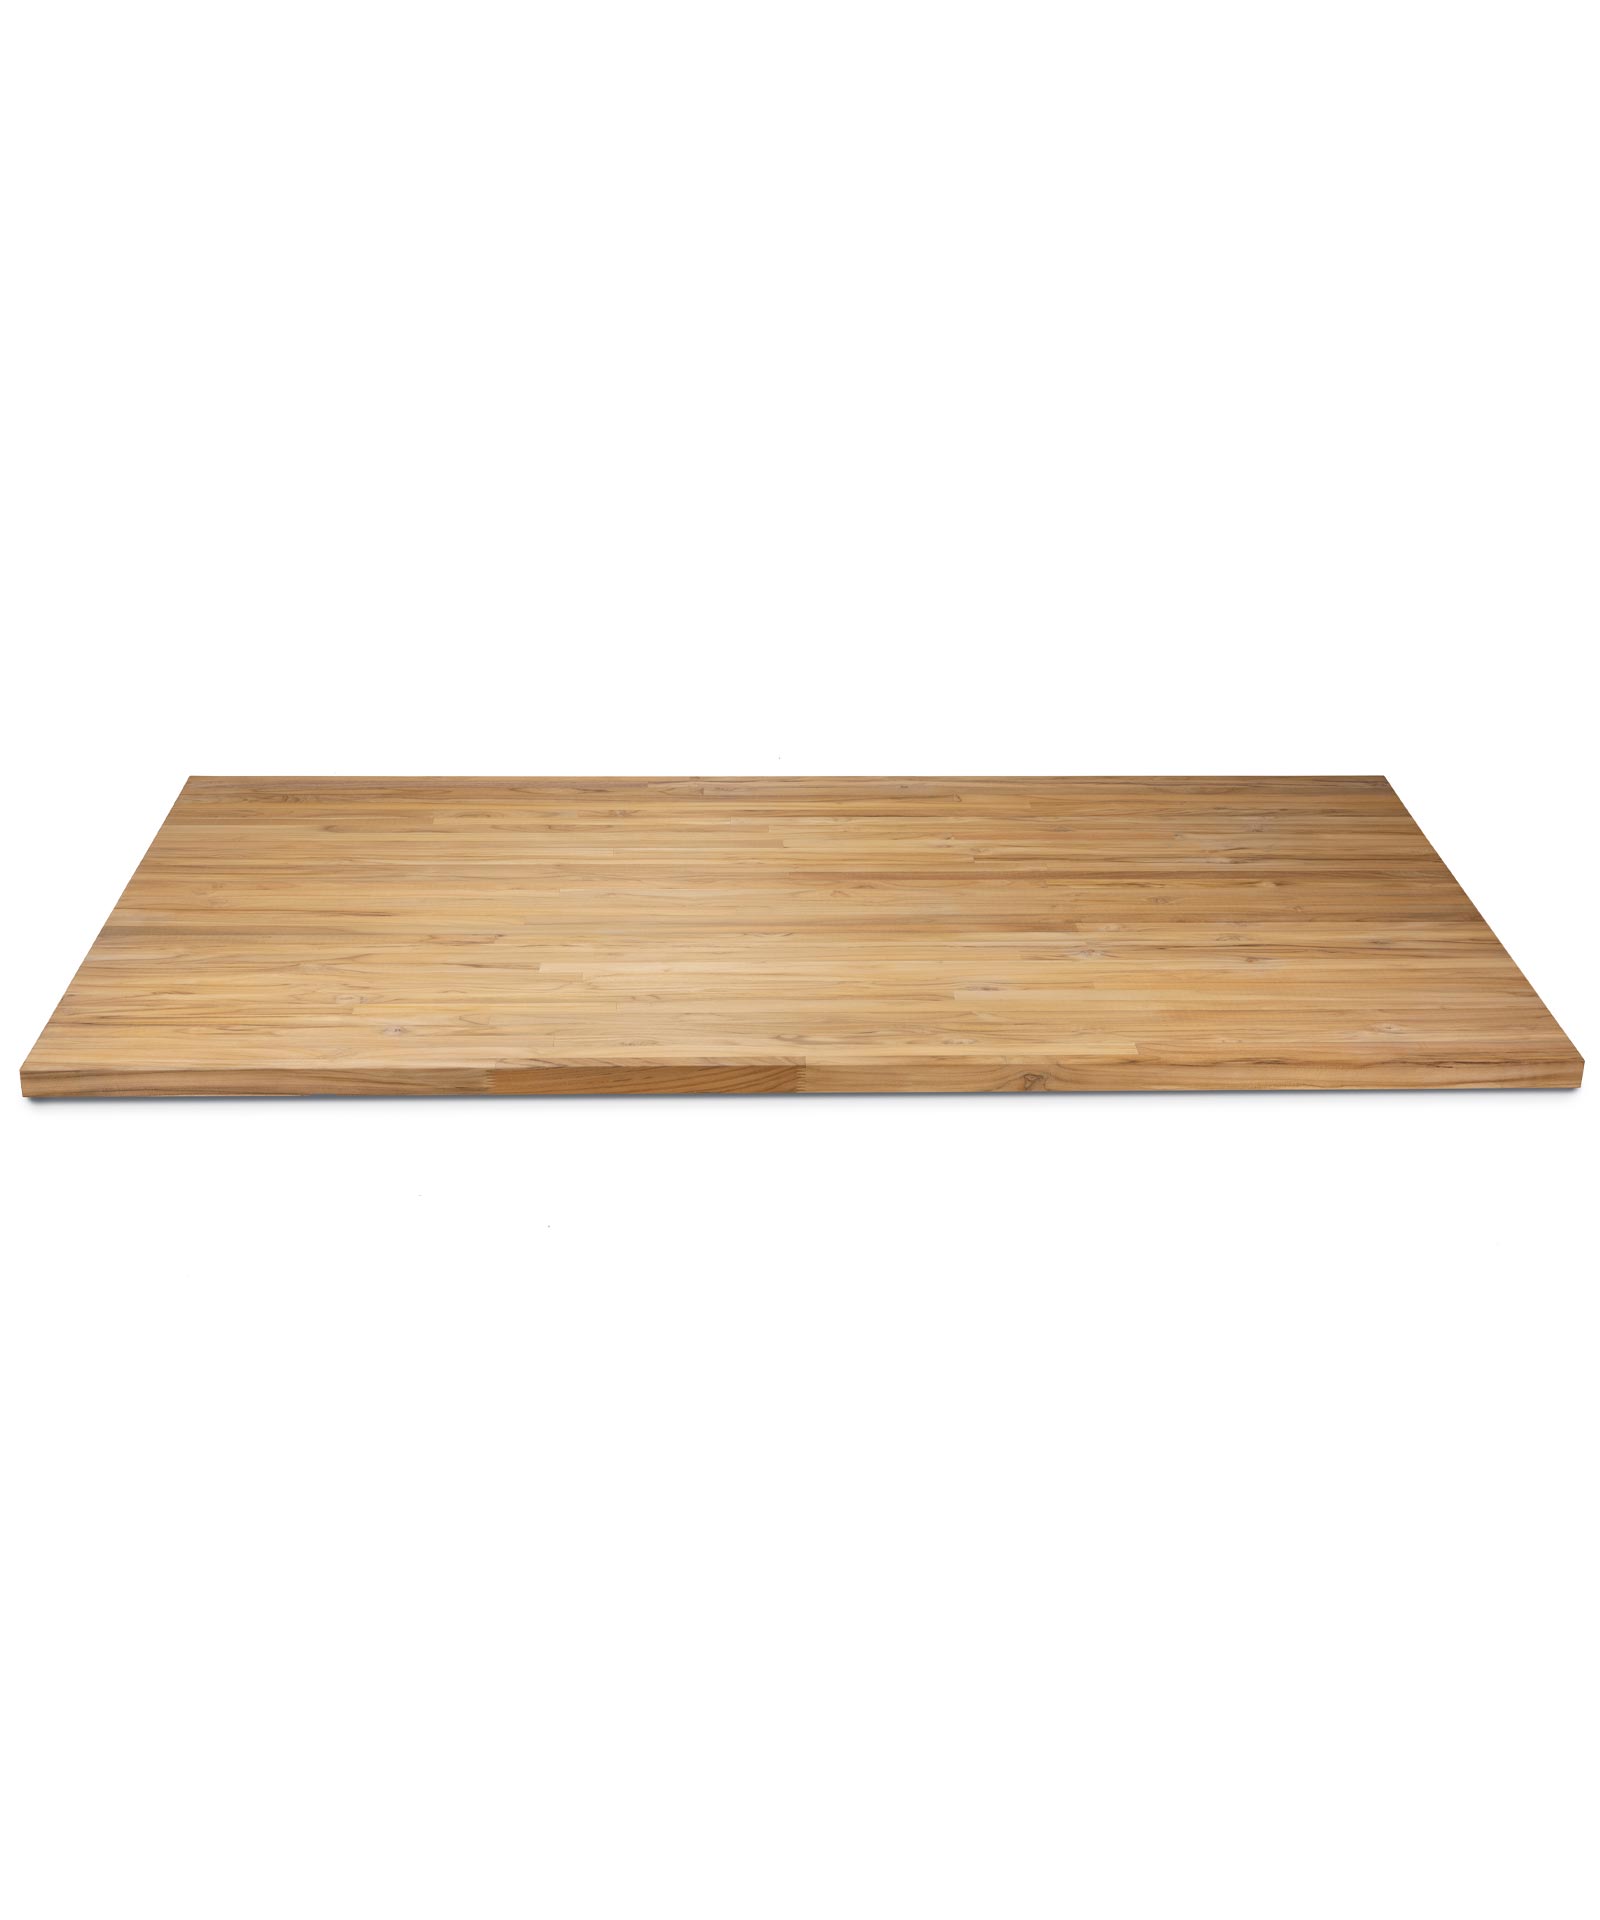 Planche de meuble teck 40mm aboutée, FSC 100% - Betterwood